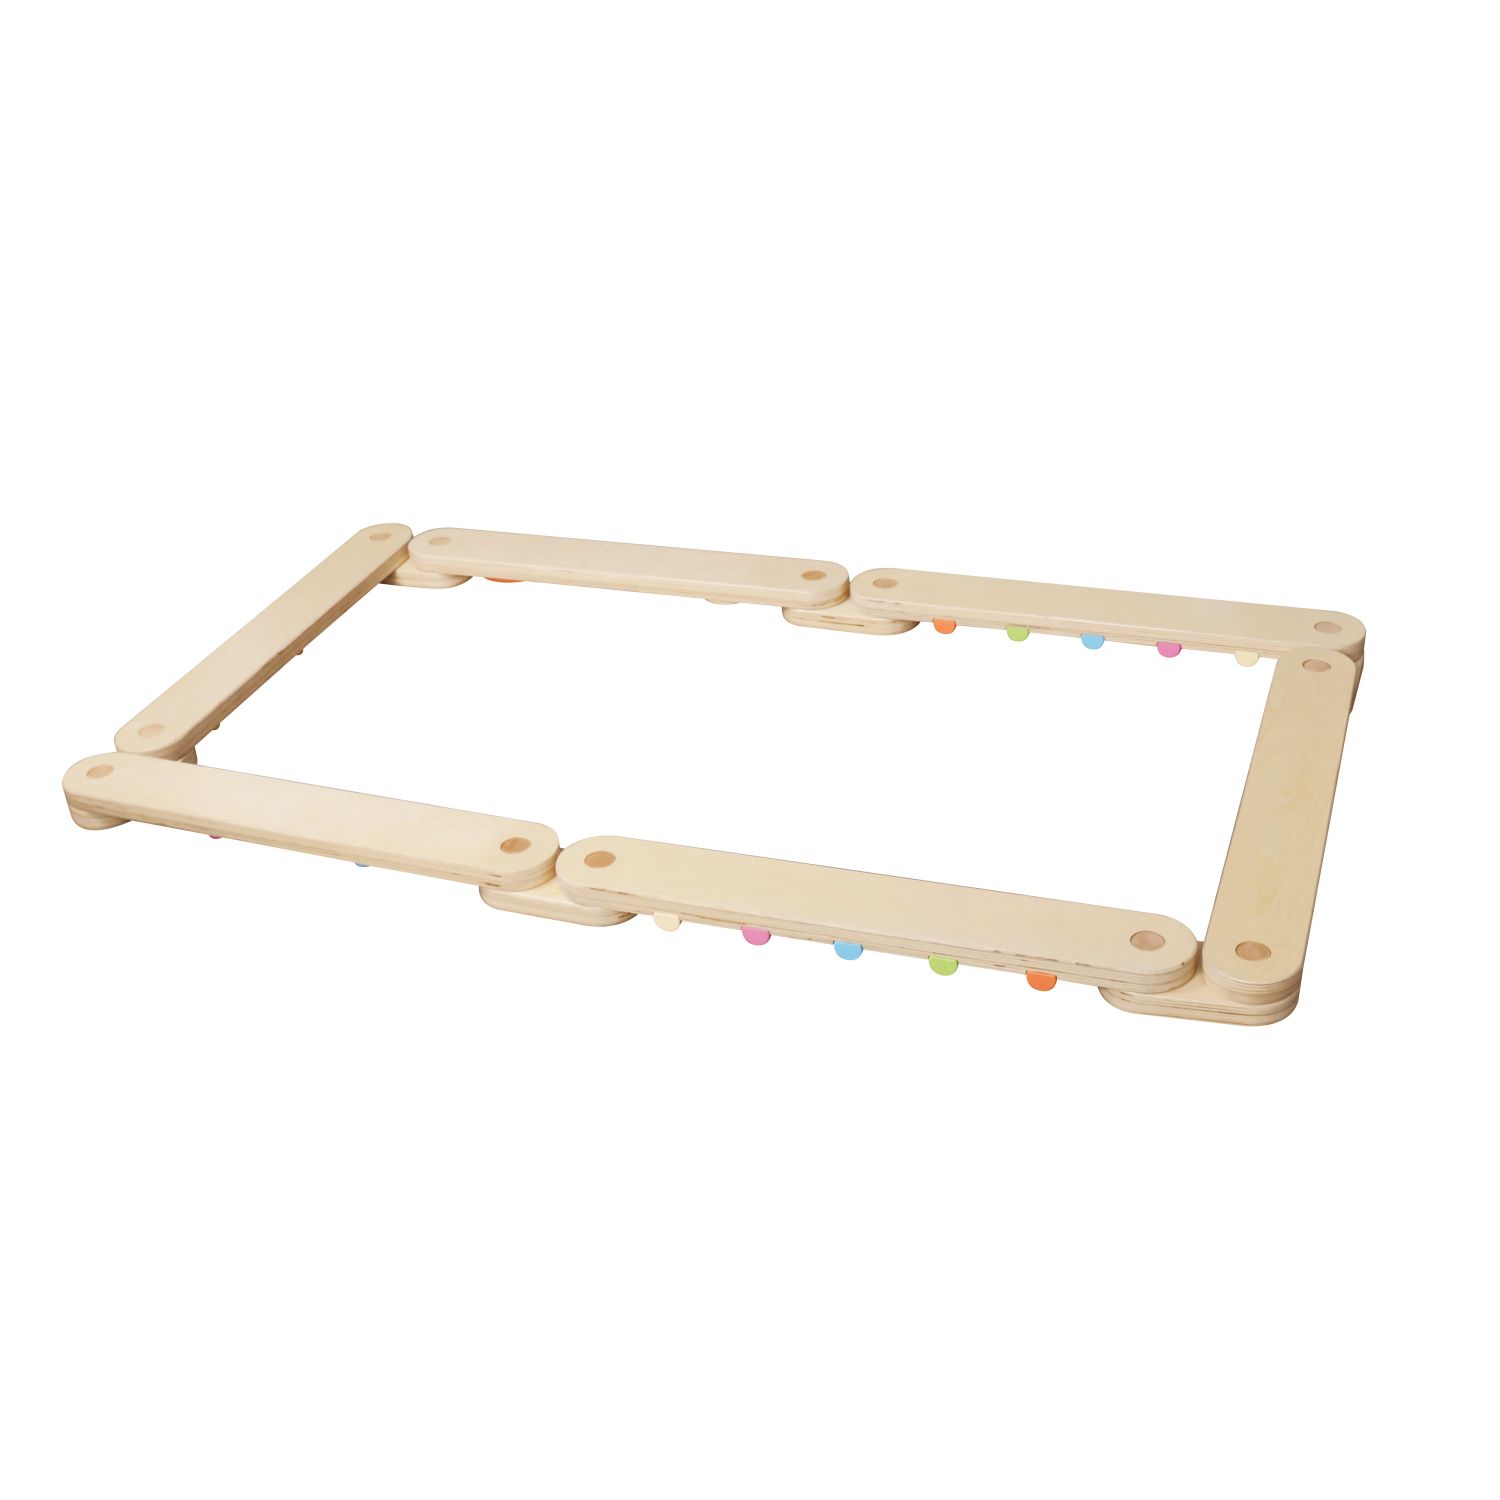 GICO Balancierbalken Schwebebalken Parcours aus Holz für Kinder mit vielen Spielmöglichkeiten - Balancier Spielspaß in Top Qualität - 6553…